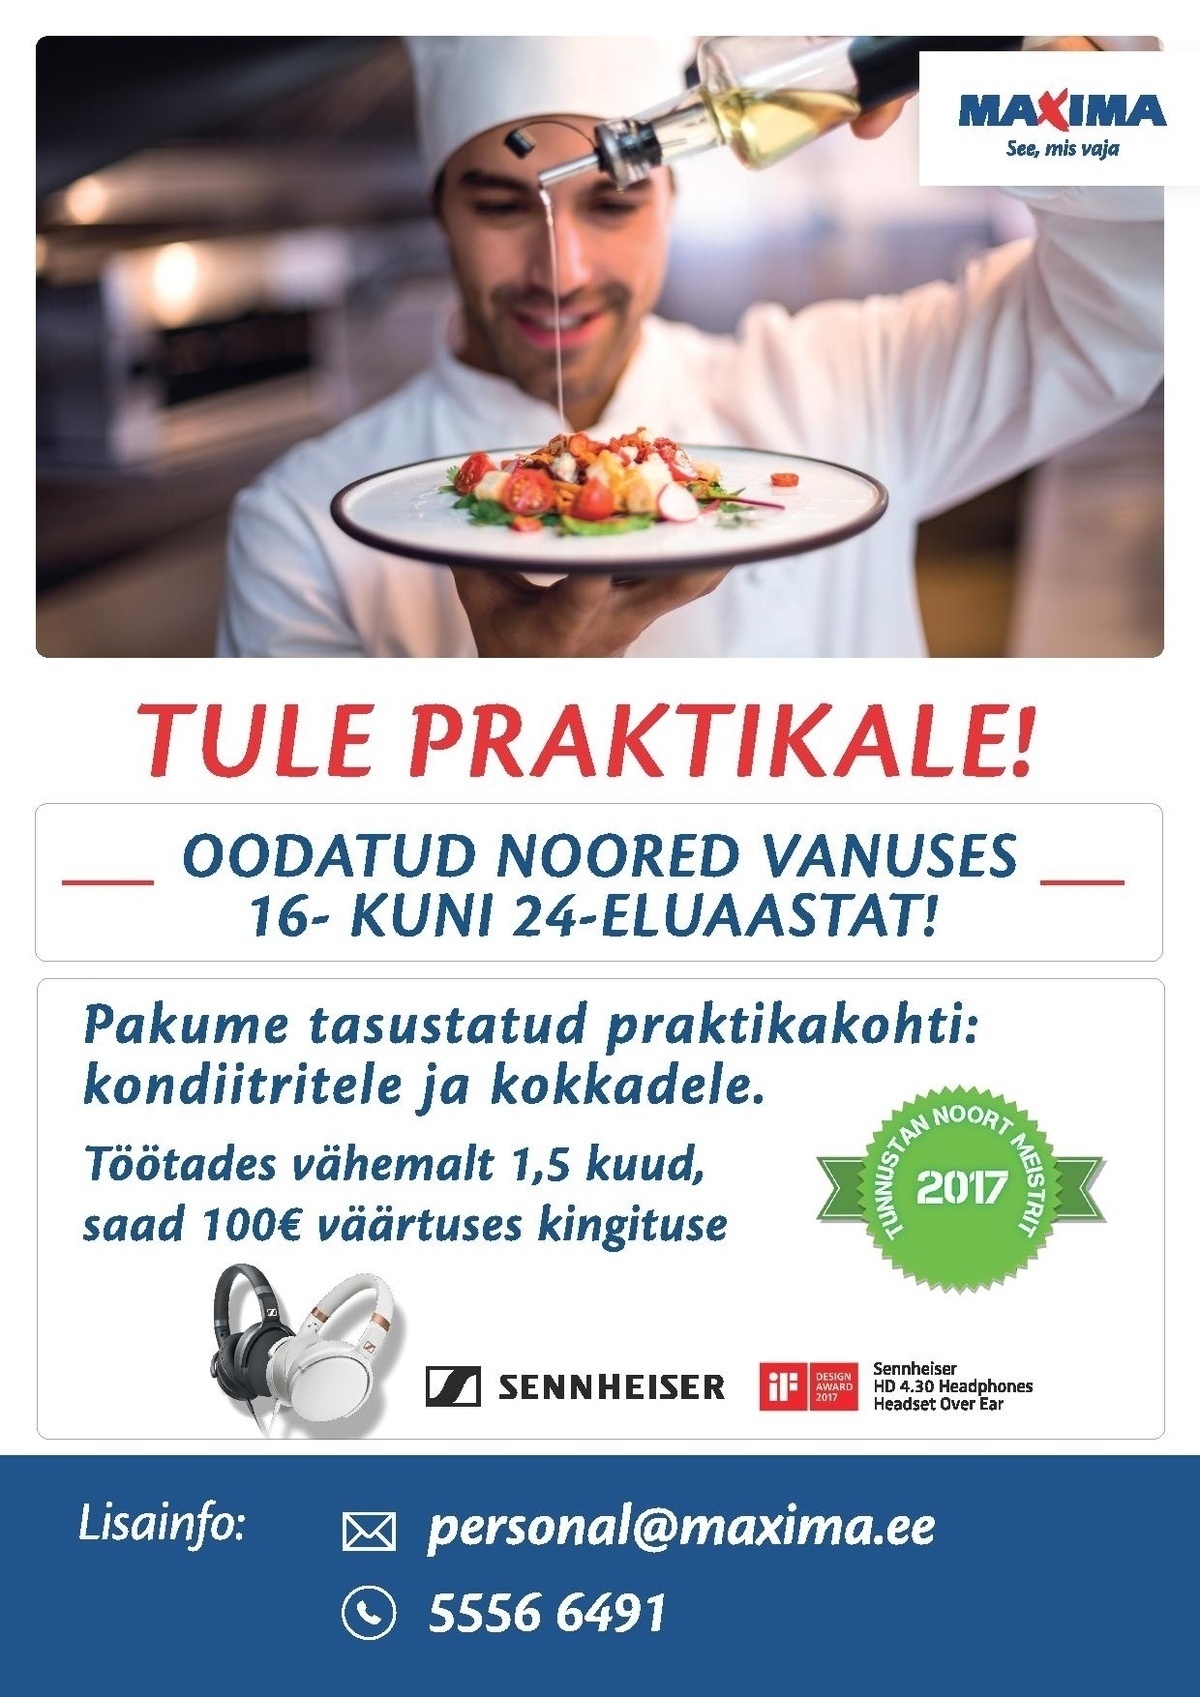 Maxima Eesti OÜ Praktika Tallinna Maxima tootmistsehhis